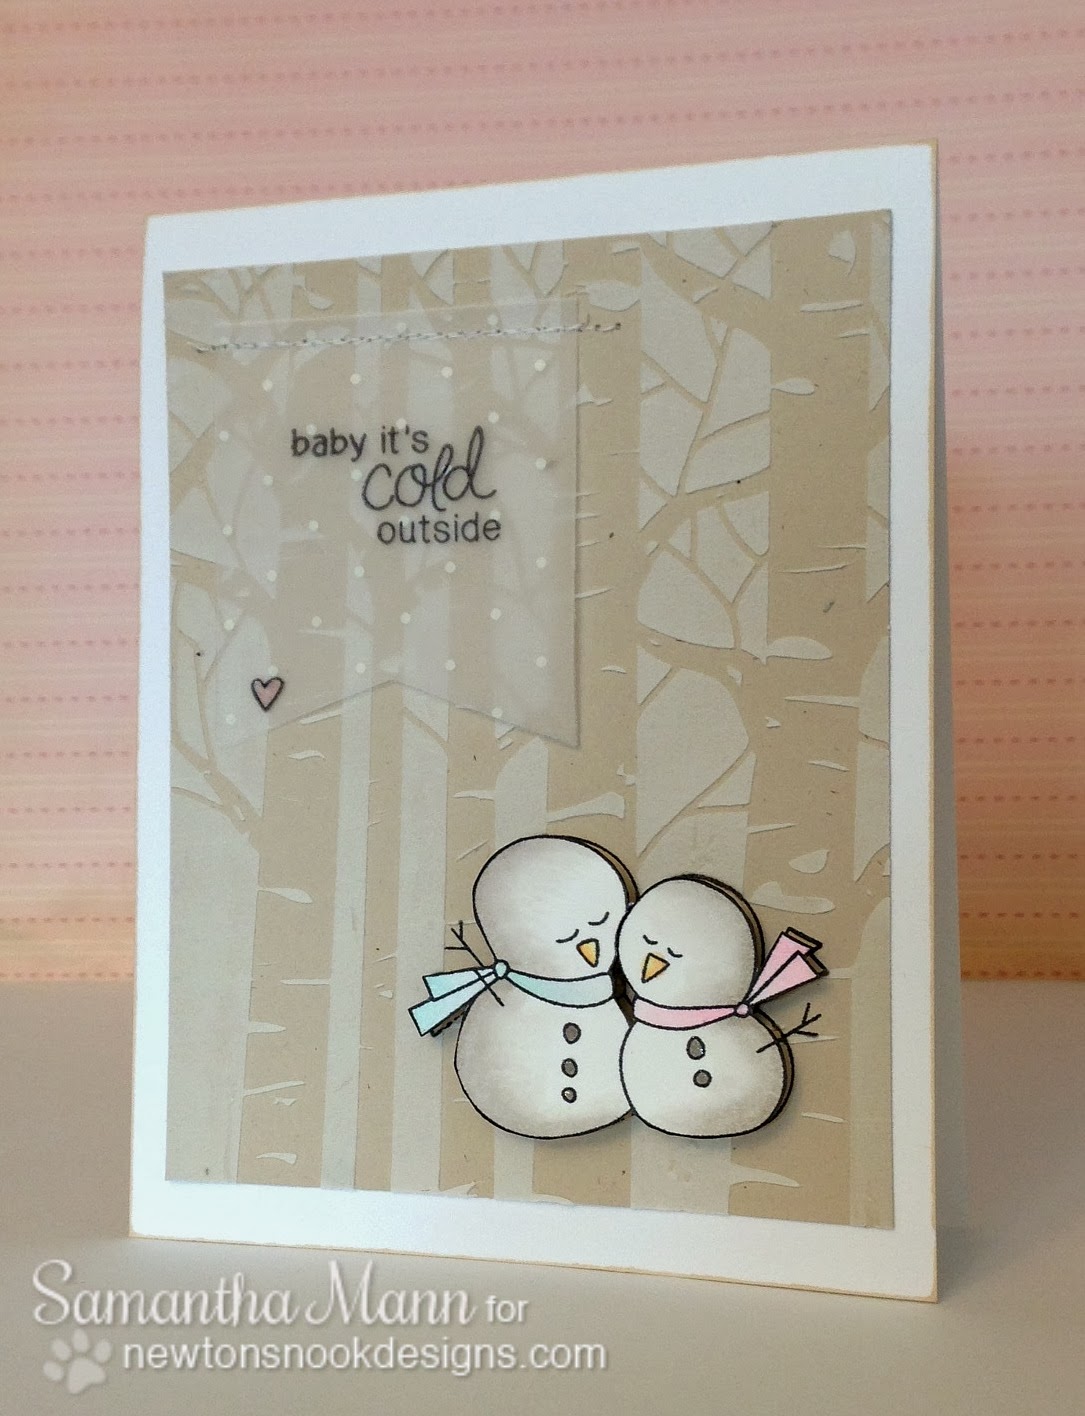 Sweet Winter Snowman Card by Samantha Mann using Frozen Friends Stamp set by Newton's Nook Designs